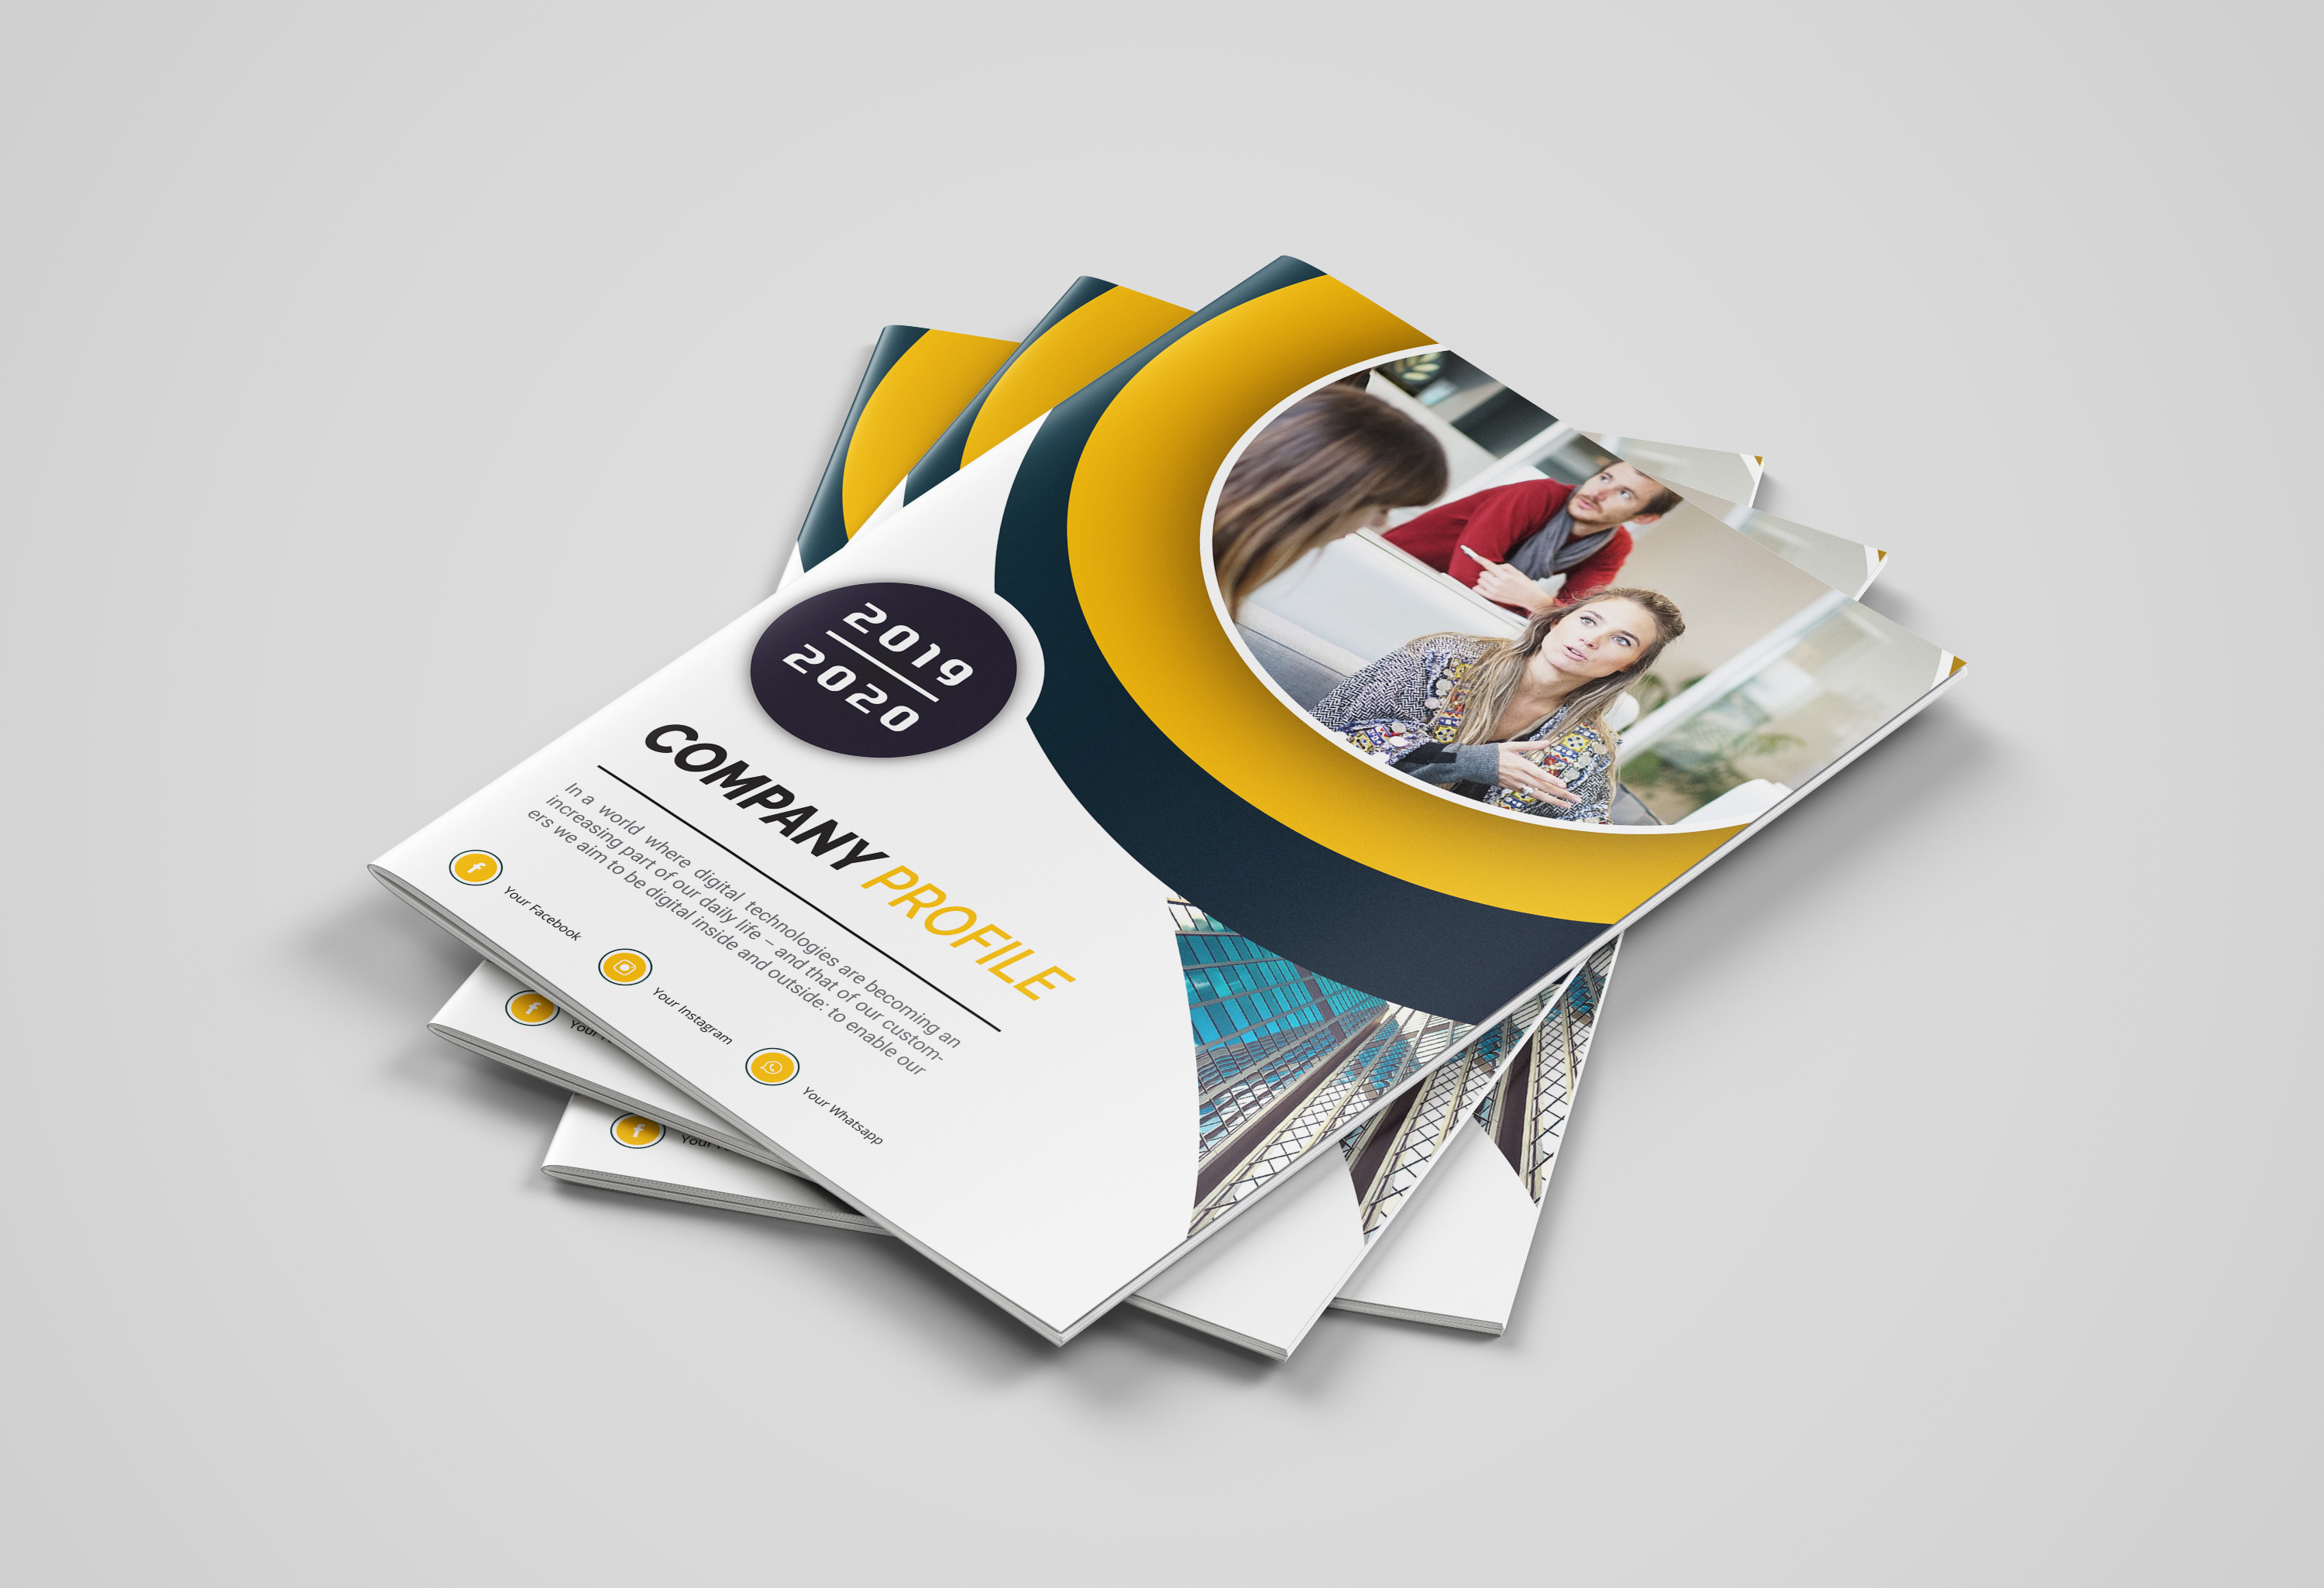 Design Company Profile Business Brochure, Or Annual Report